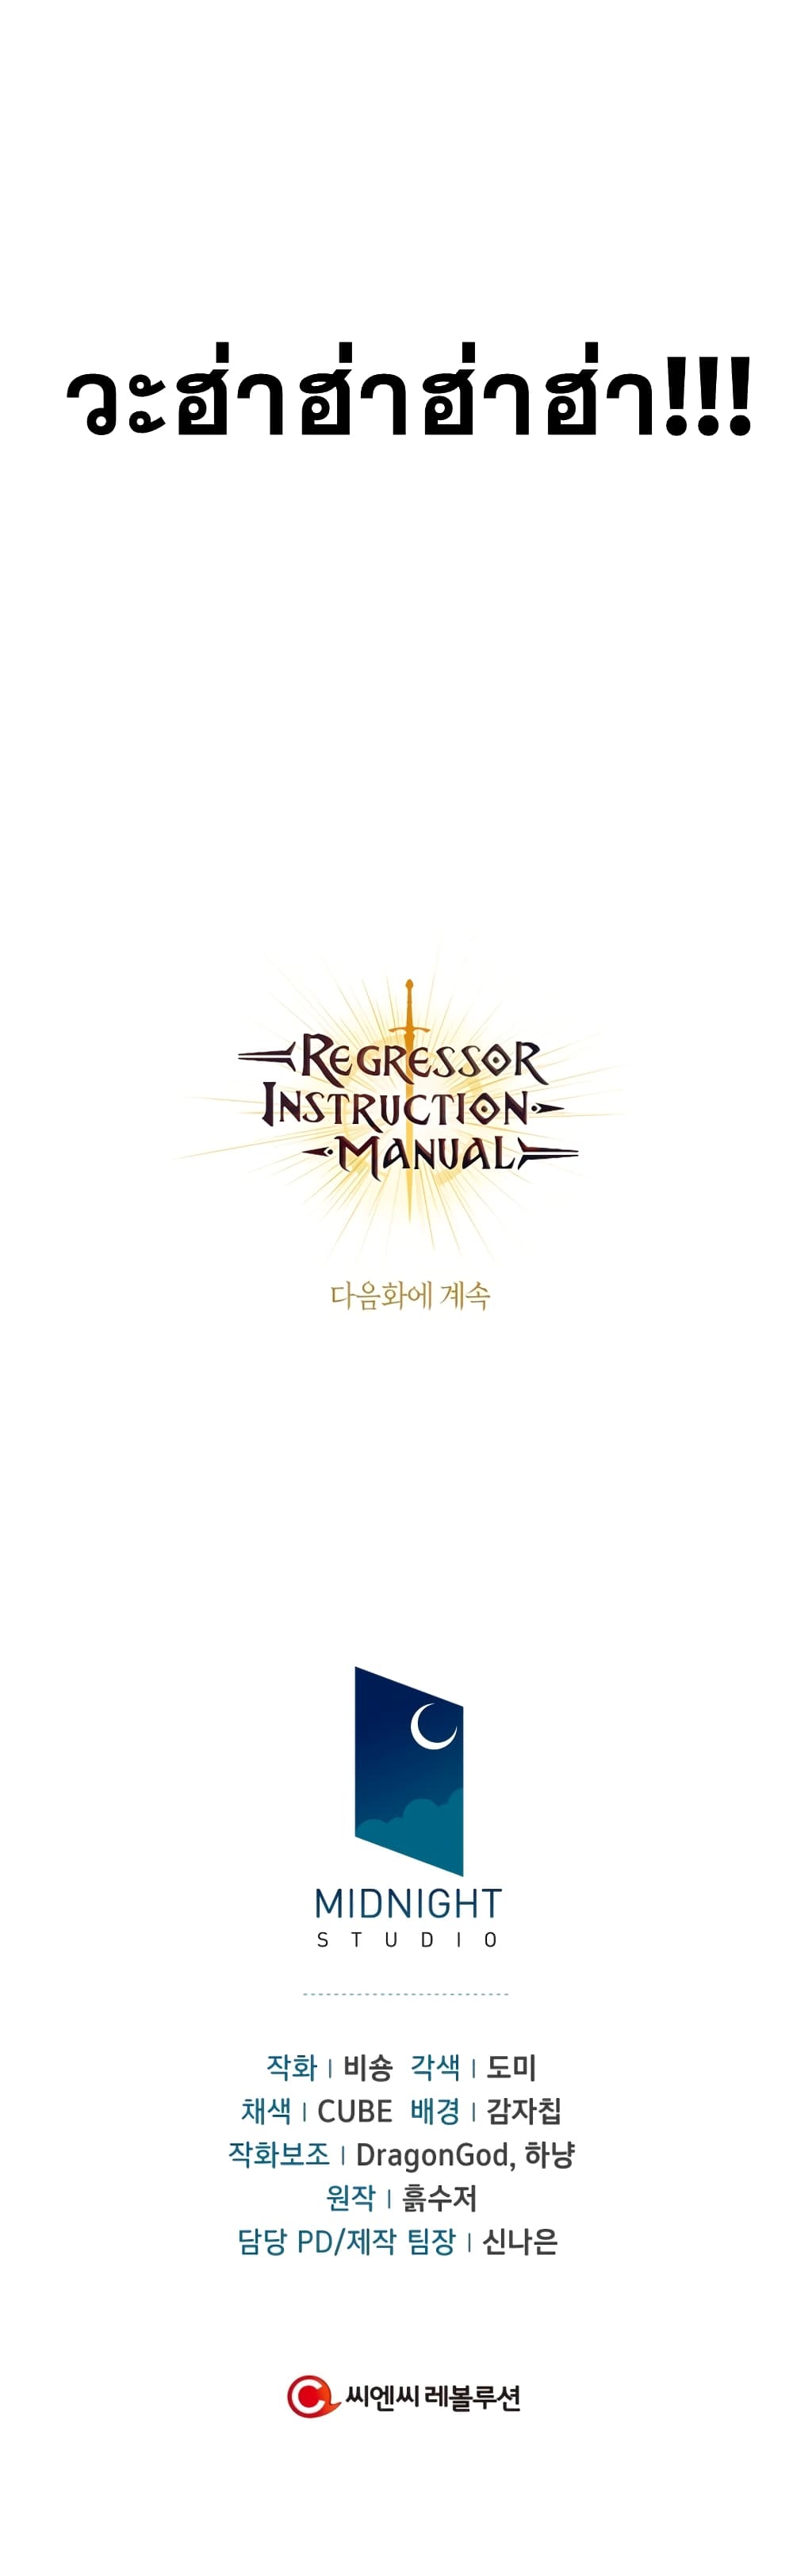 regressor instruction manuel 28 18